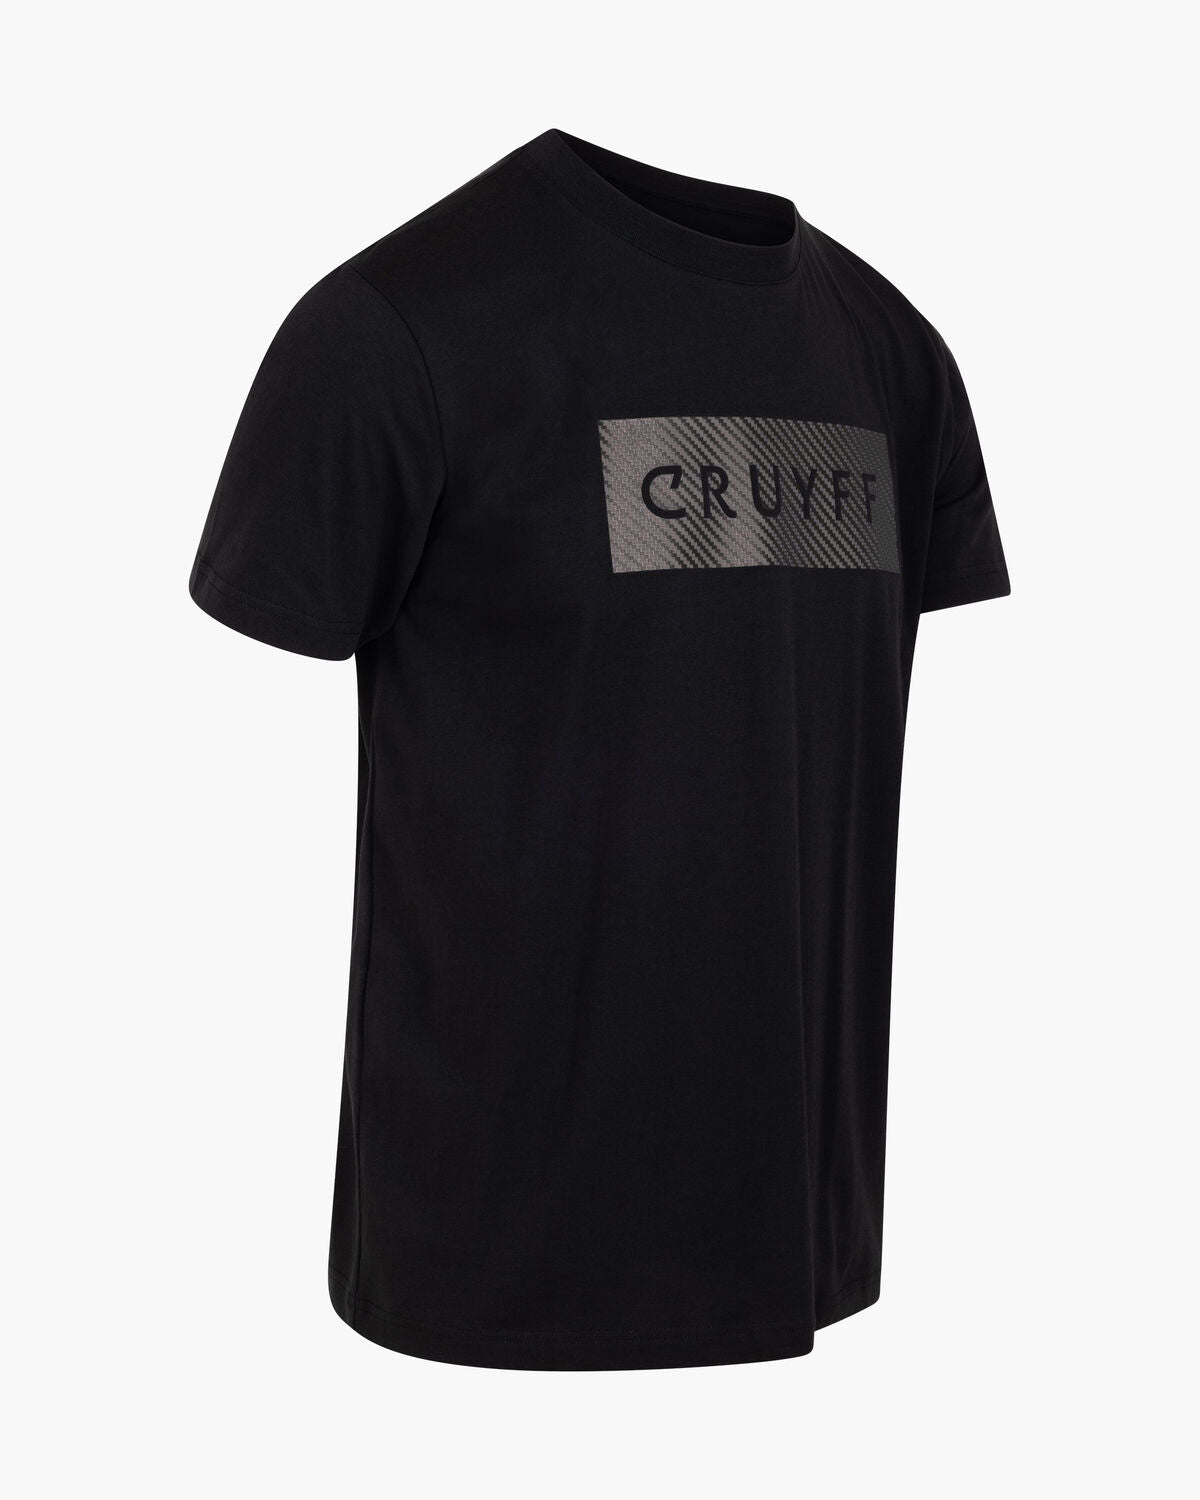 Camiseta CRUYFF LASER blk - CA241104 998